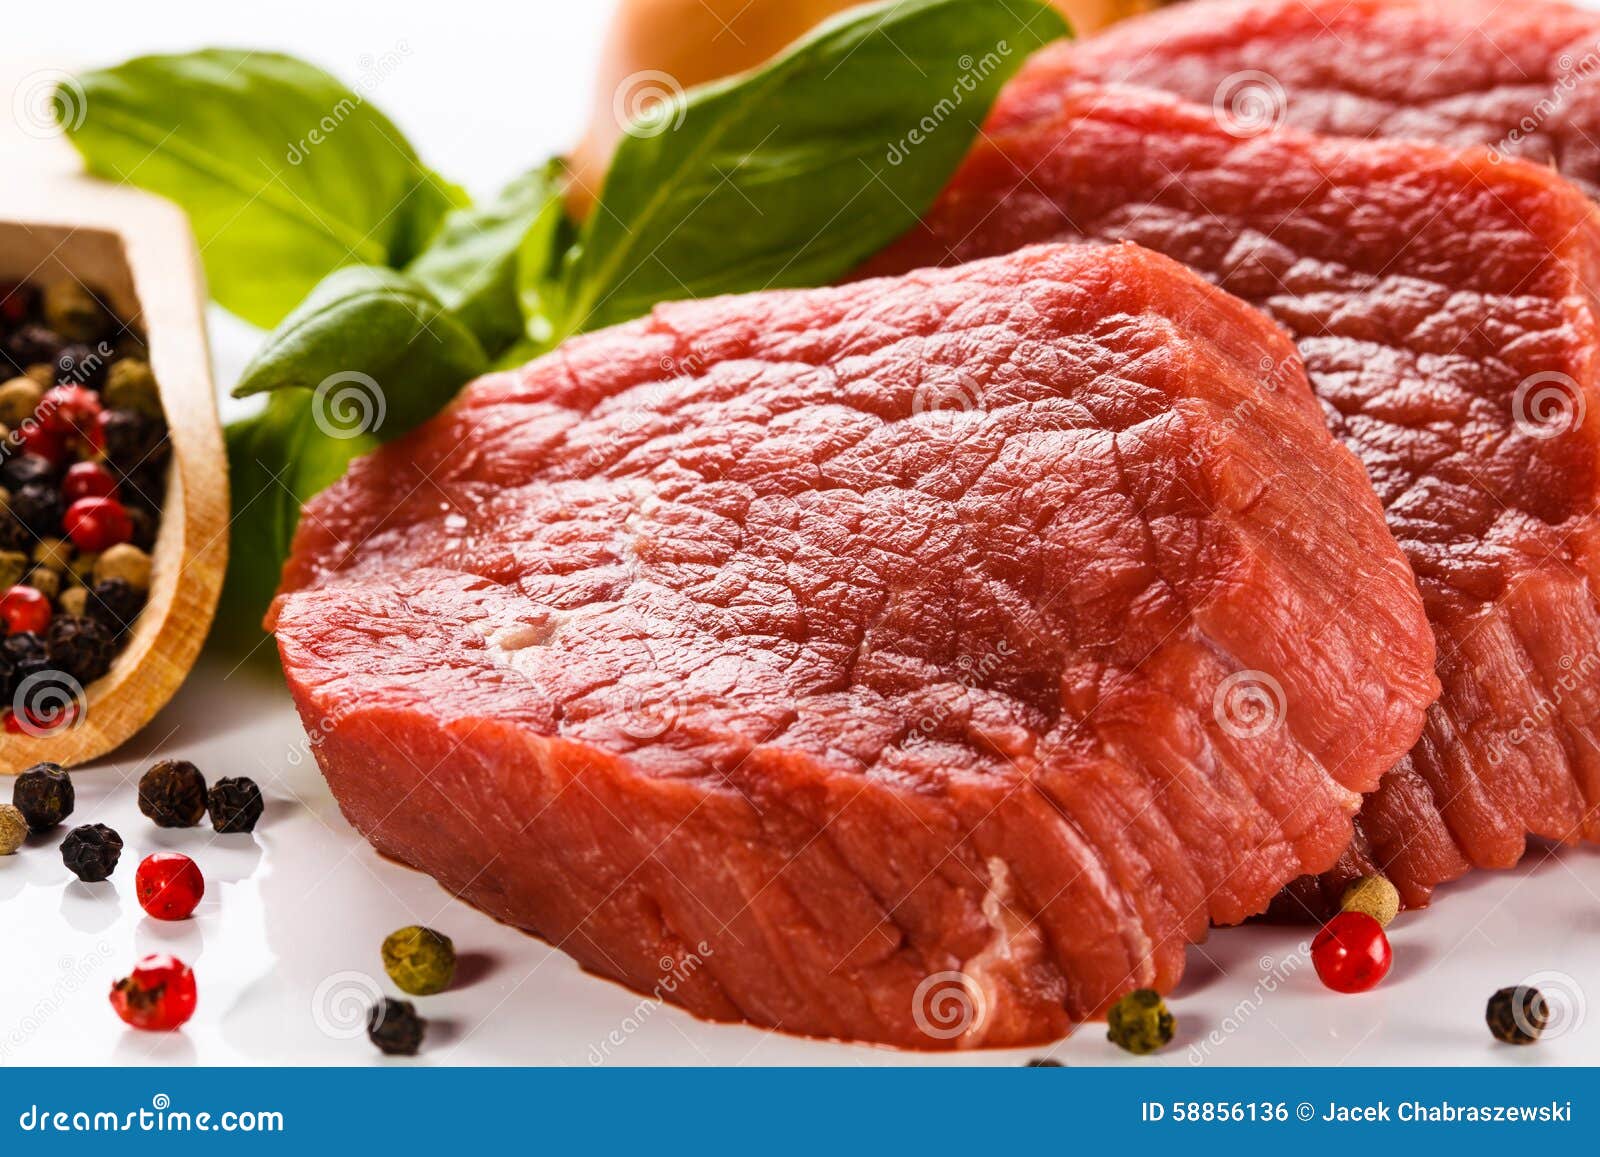 Говядину нужно есть. Мясо говядина. Свежее мясо. Говяжье мясо.